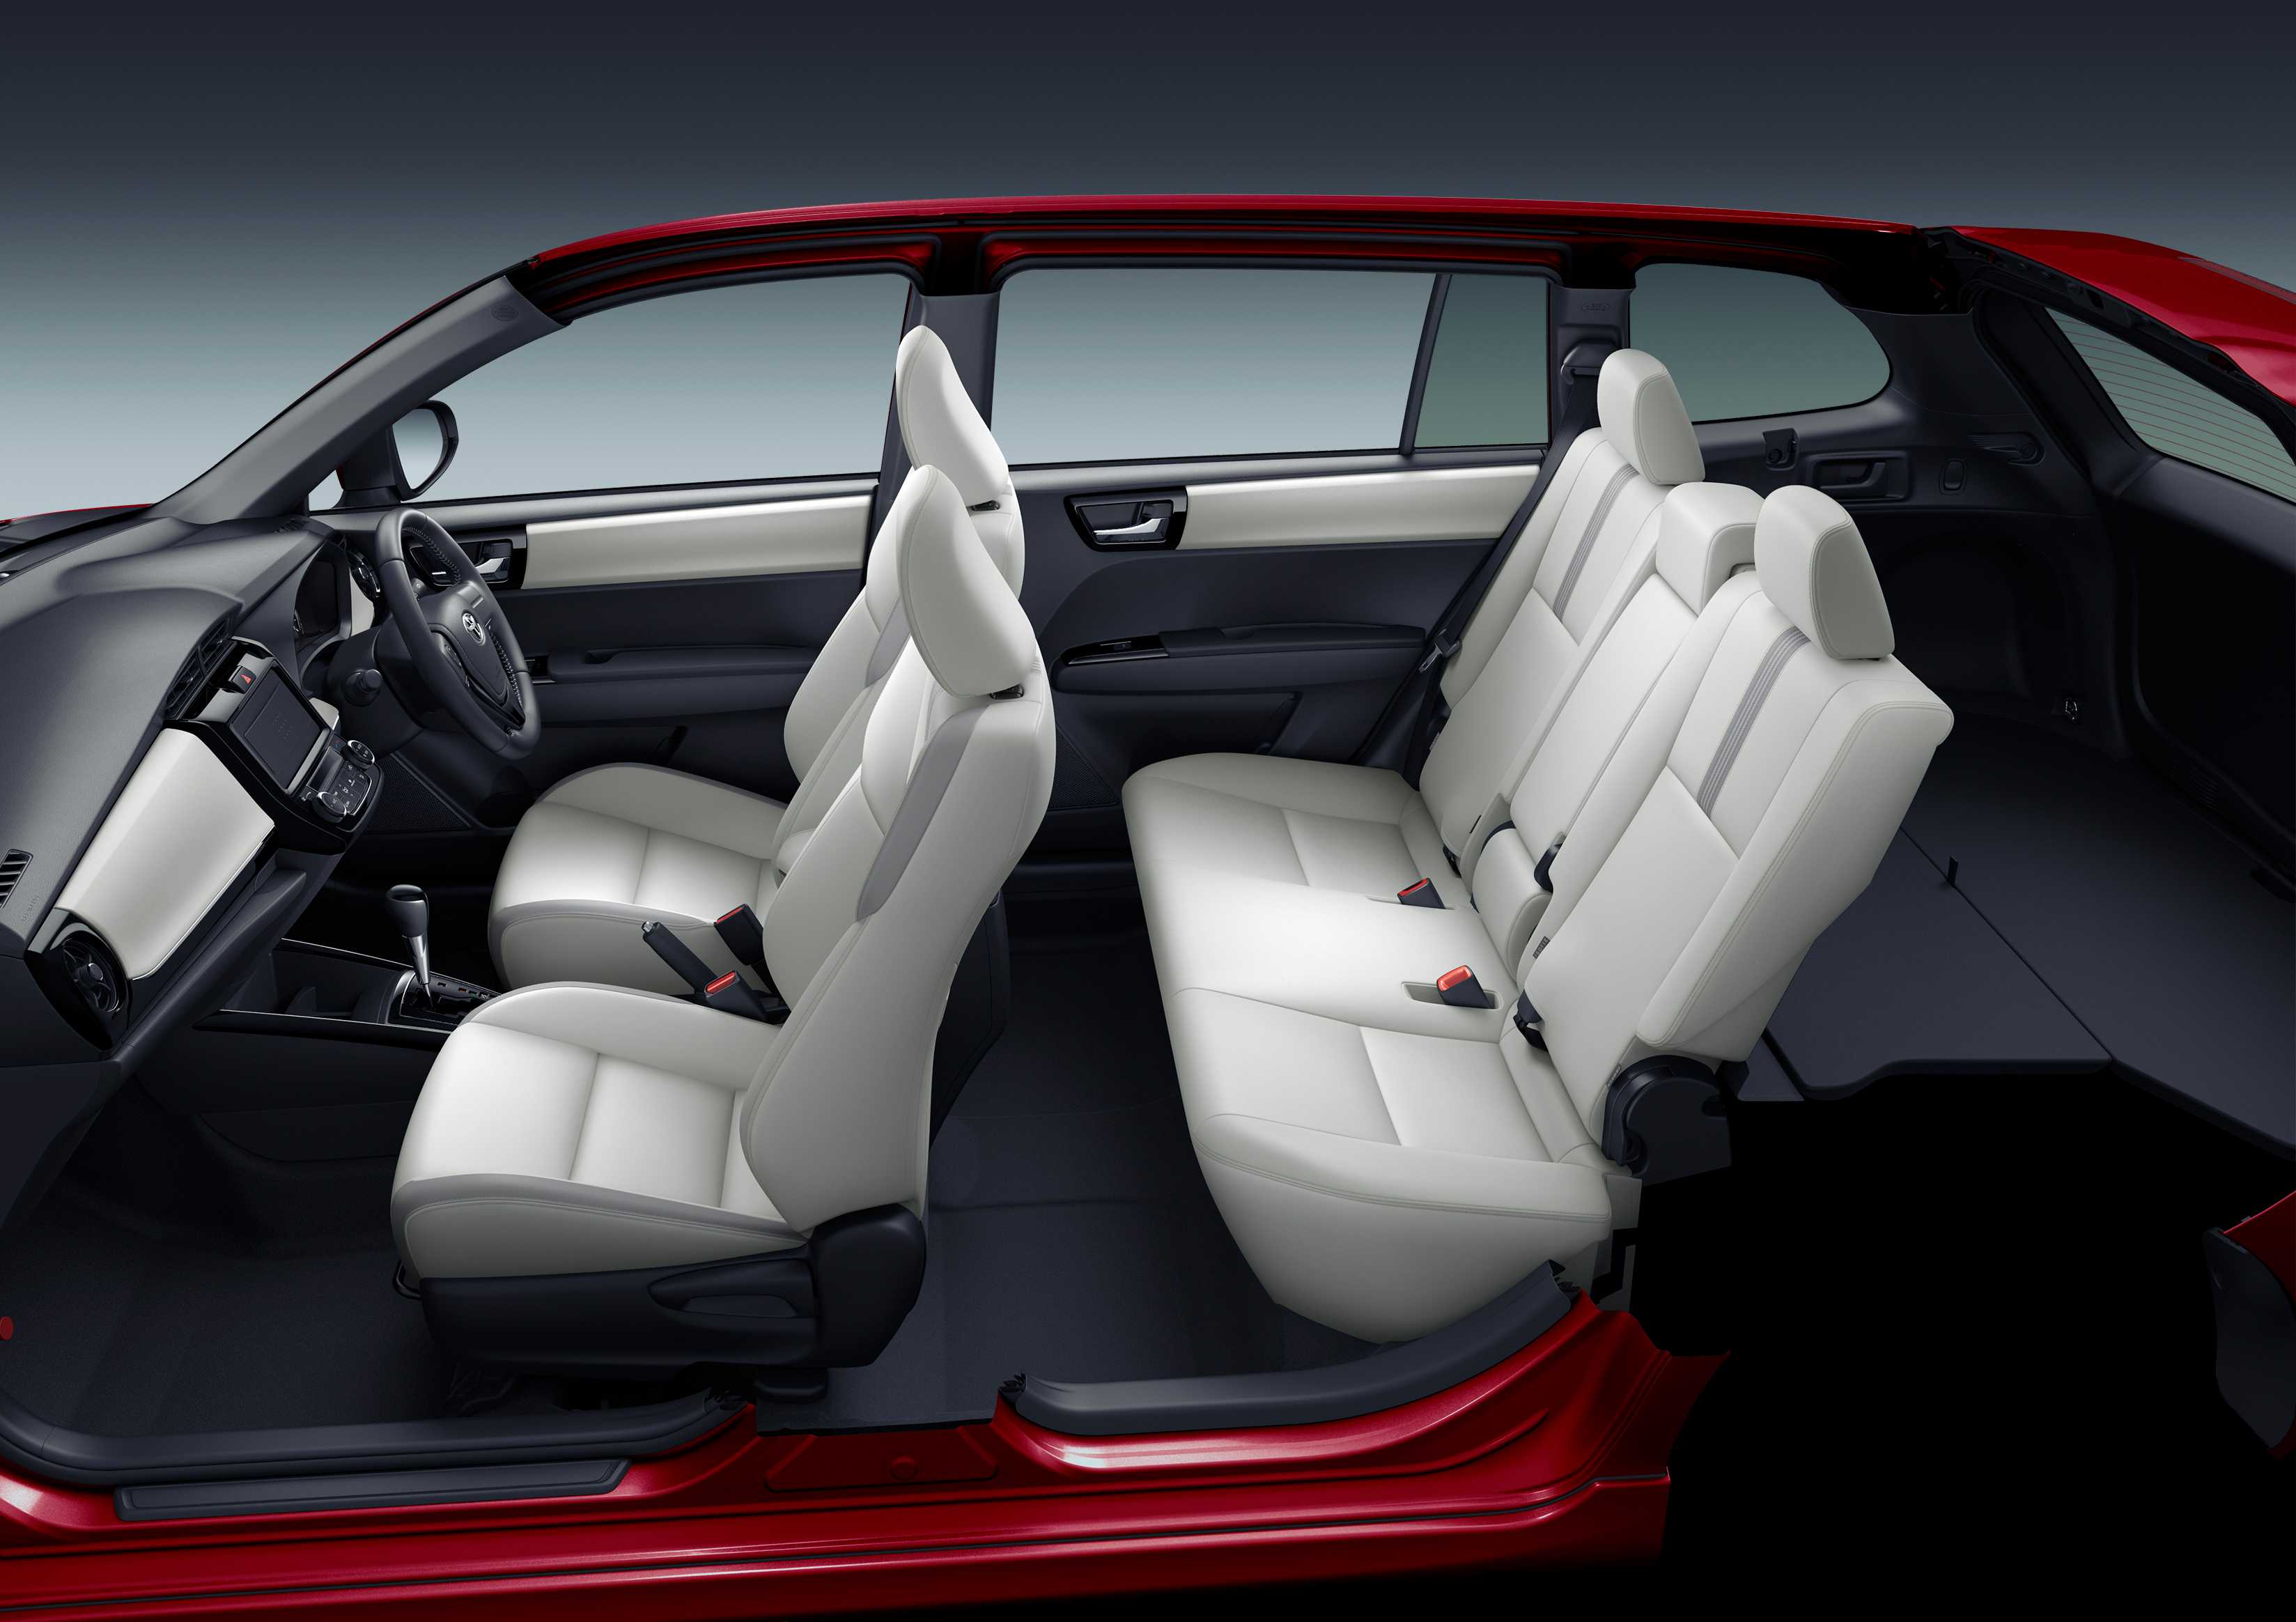 Toyota Fielder interior - Seats